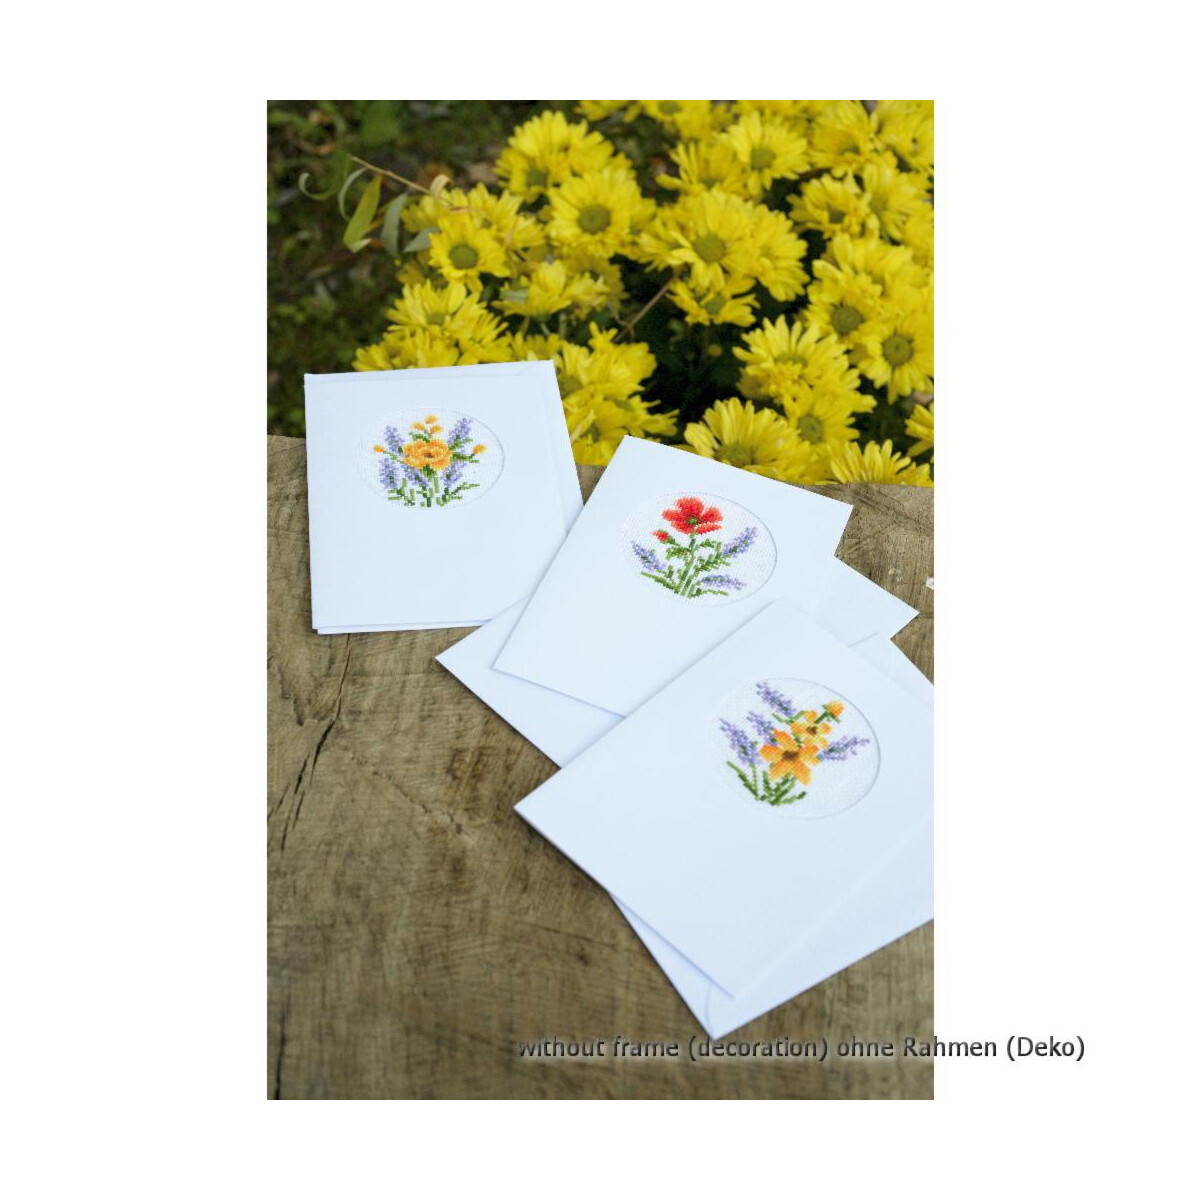 Набор поздравительных открыток Vervaco "Цветы и...